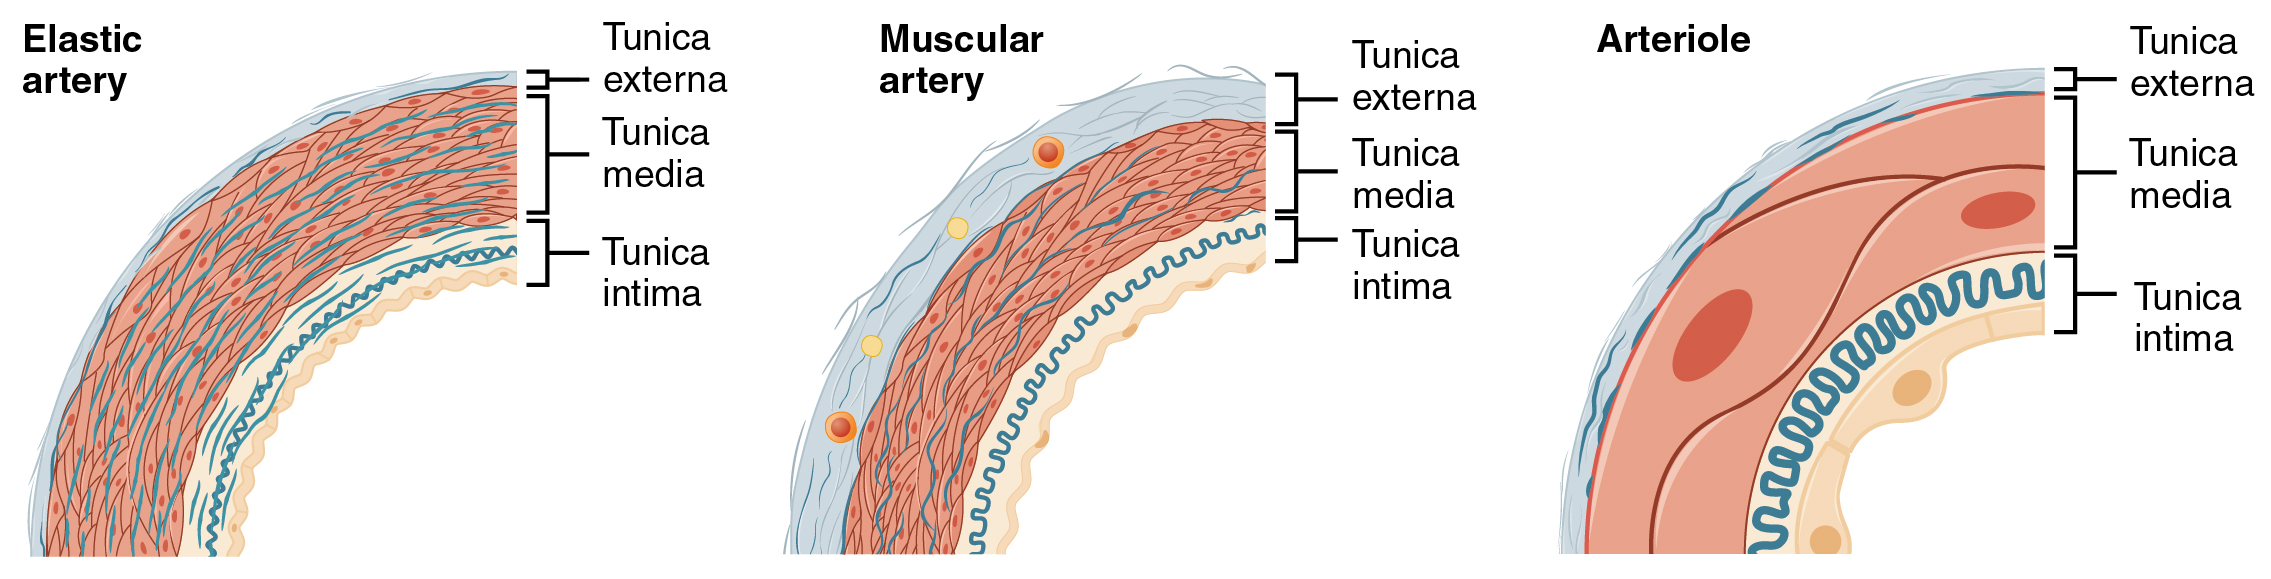 O painel esquerdo mostra a seção transversal de uma artéria elástica, o painel central mostra a seção transversal de uma artéria muscular e o painel direito mostra a seção transversal de uma arteríola.